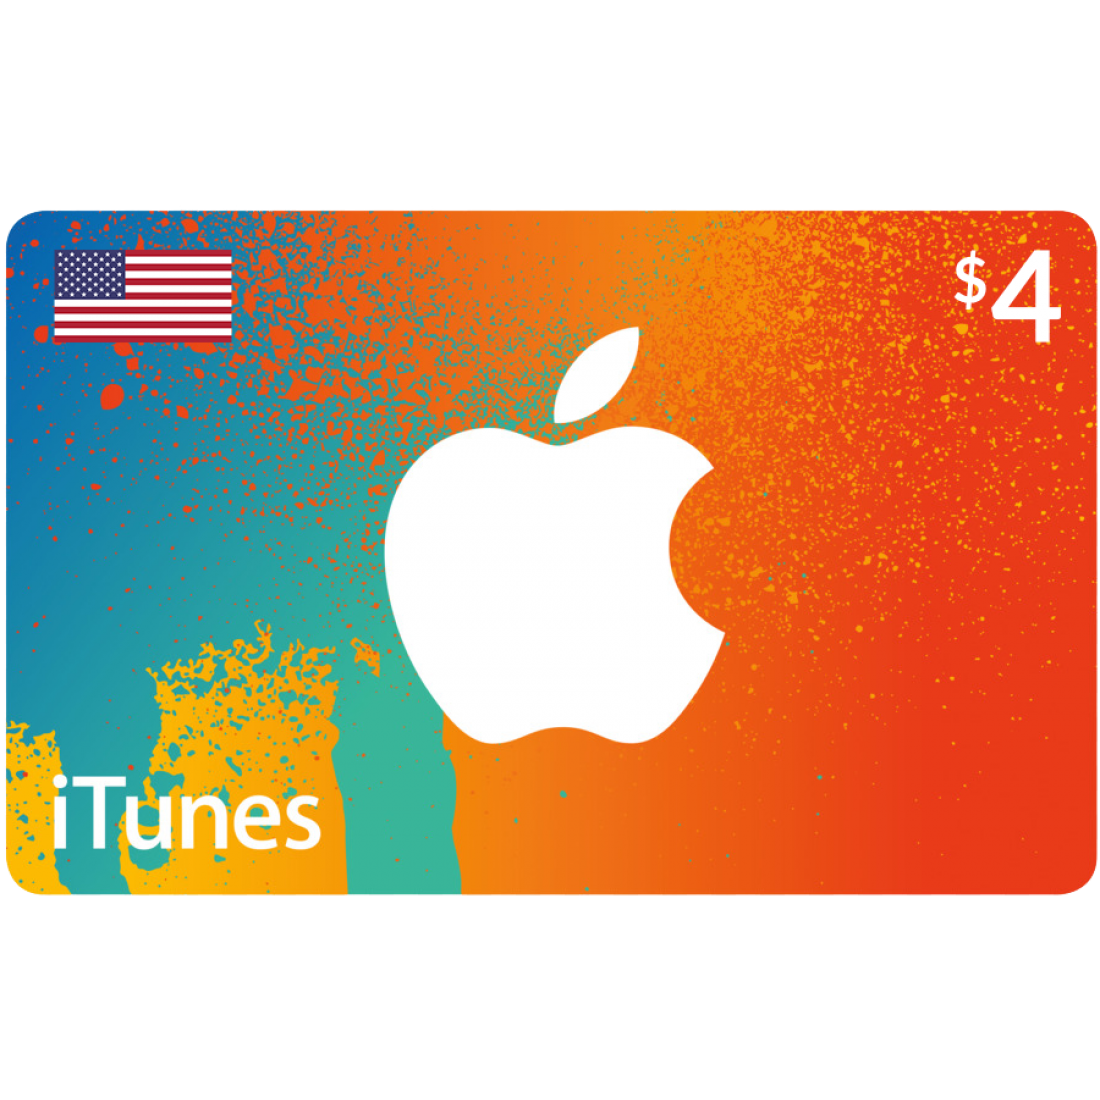 گیفت کارت اپل (آمریکا 4 دلار) تحویل آنی